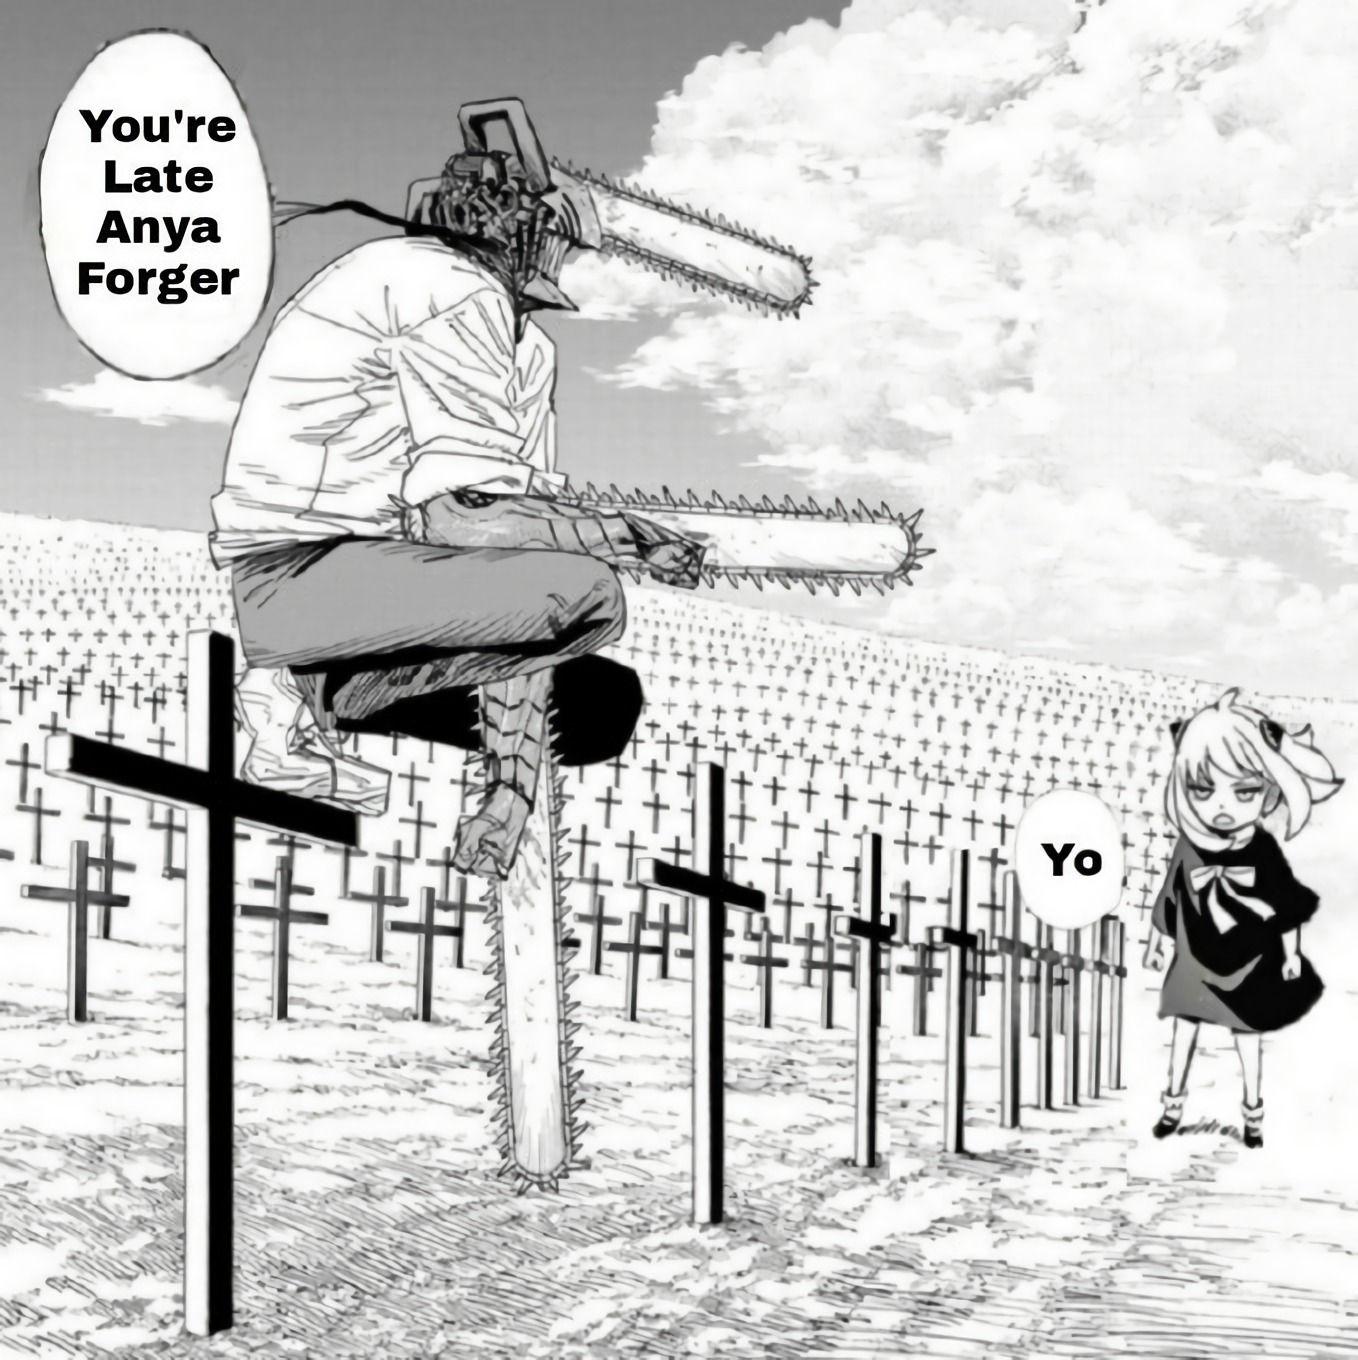 Anya Forger xuyên không đến các thế giới manga khác khiến các fan ngơ ngác và ngỡ ngàng - Ảnh 2.